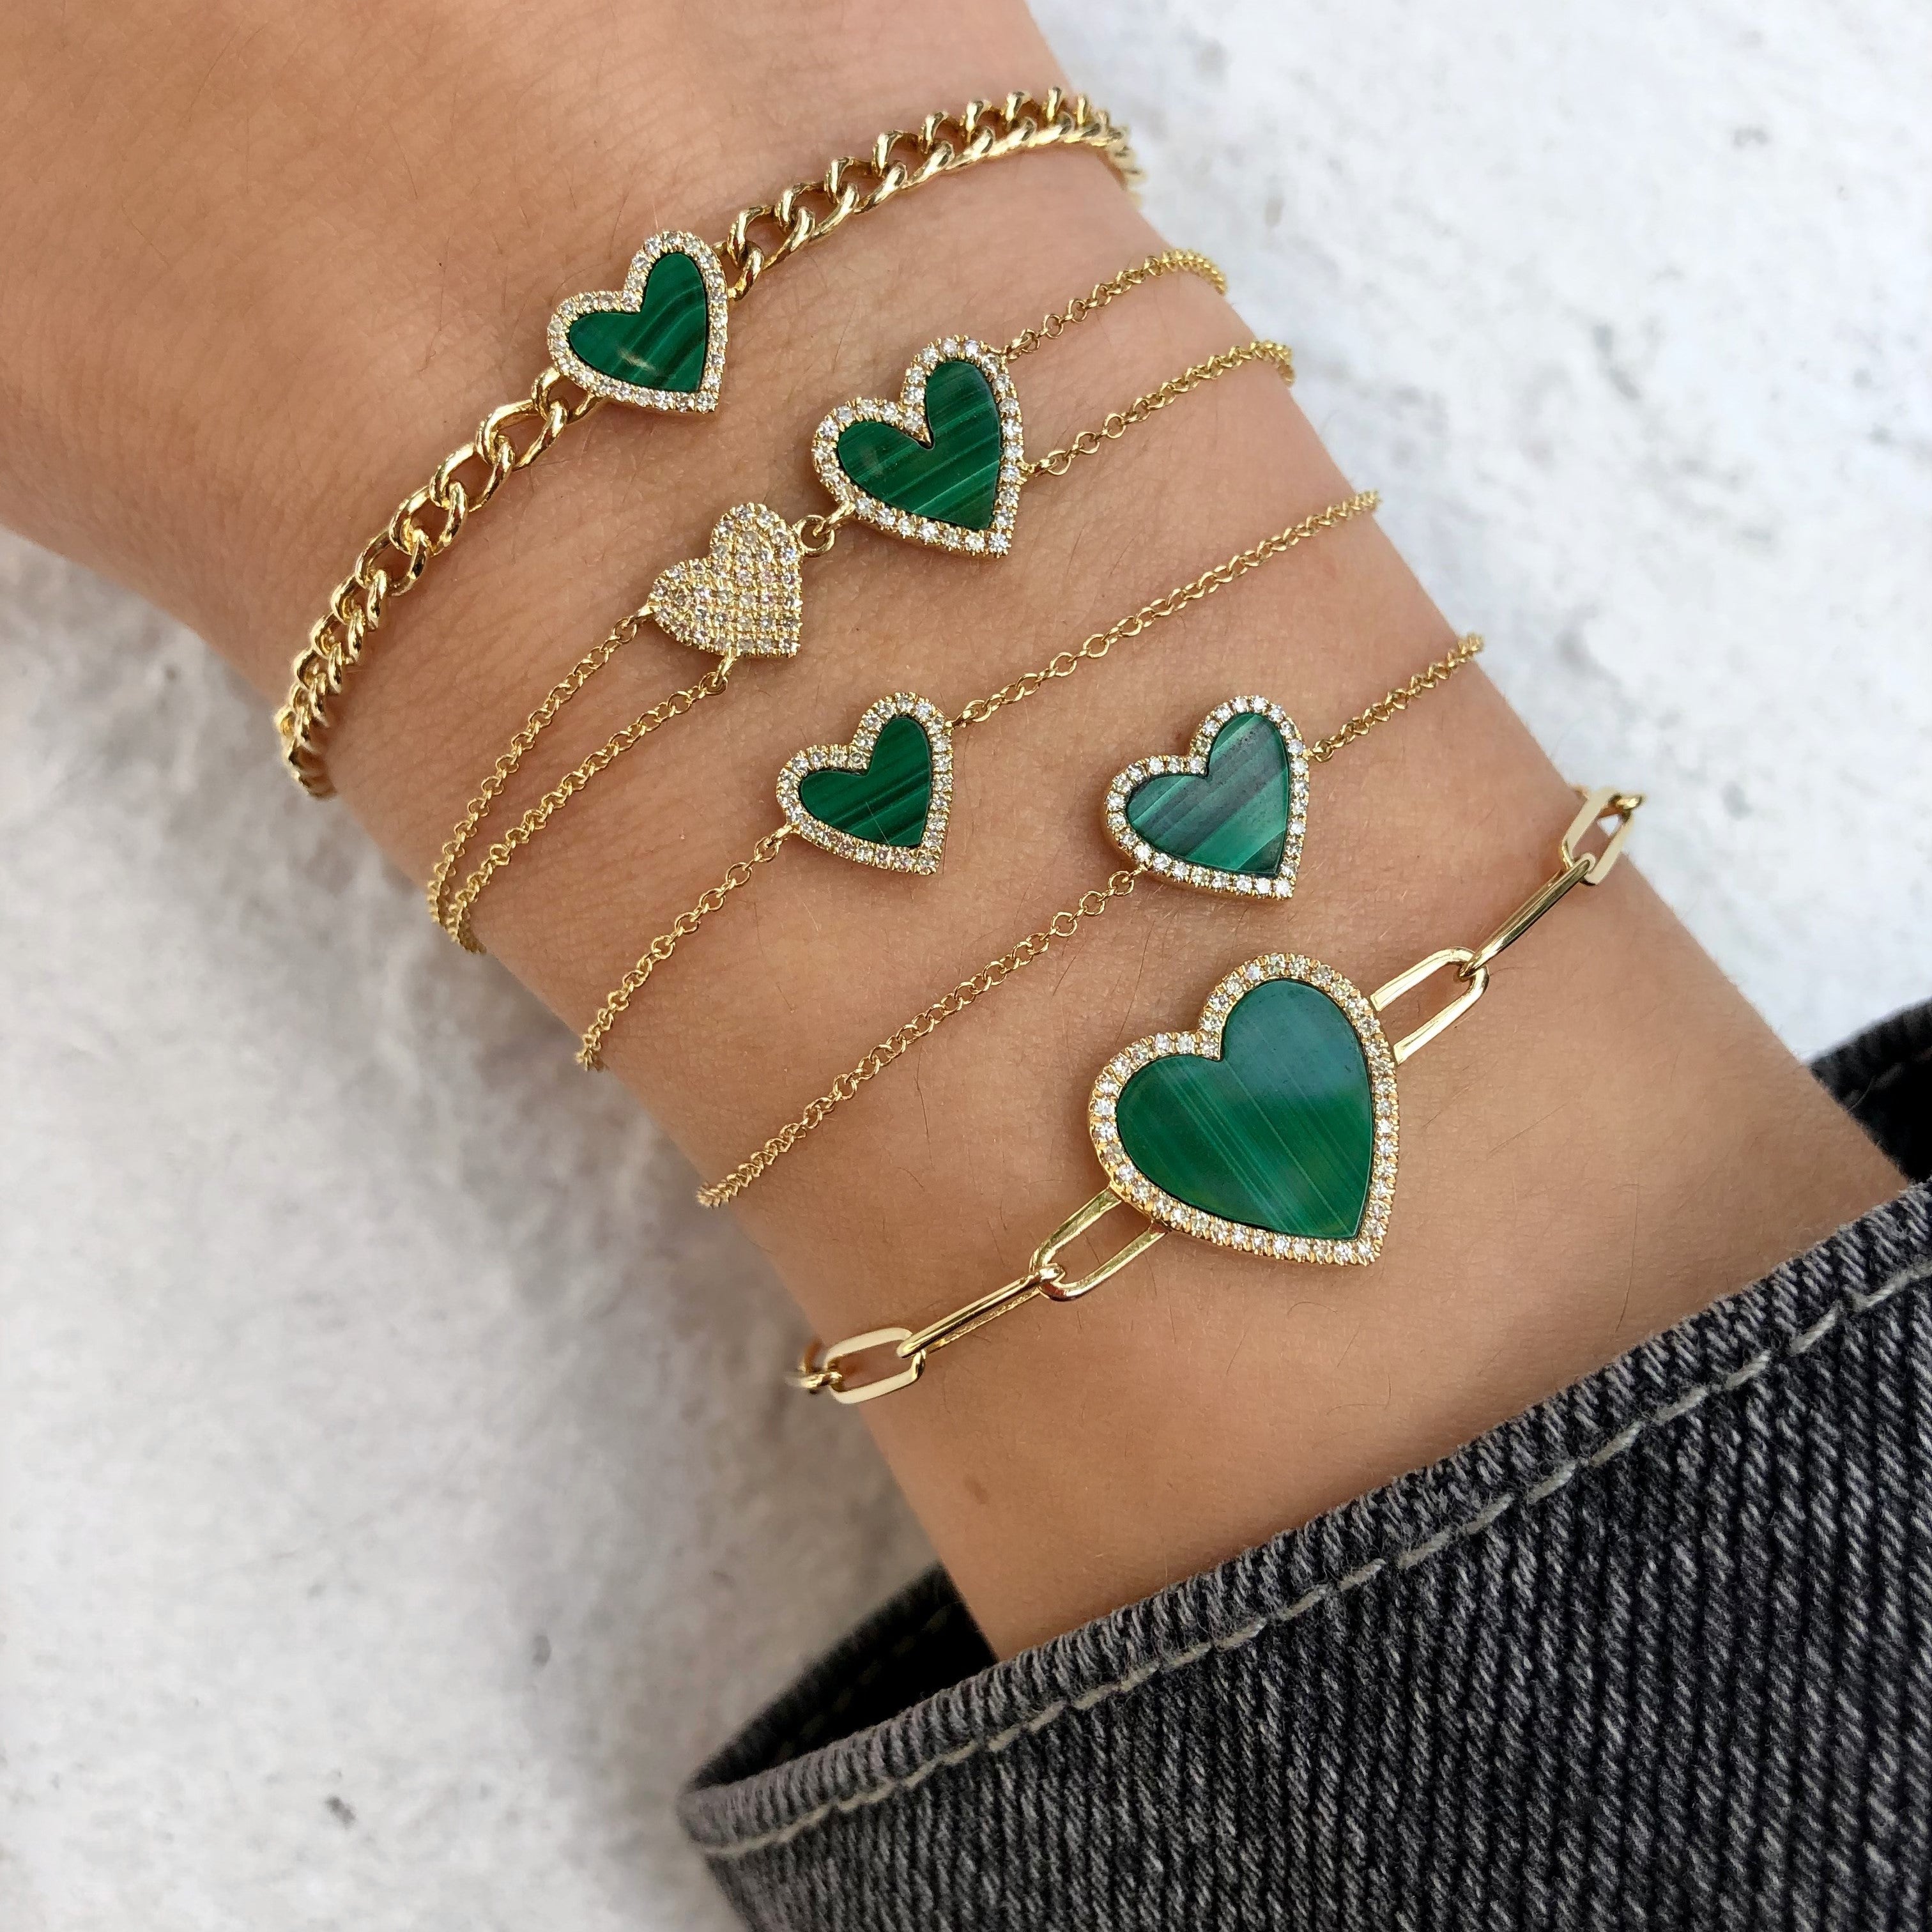 Heart or Clover Bracelet Malachite Green Clover